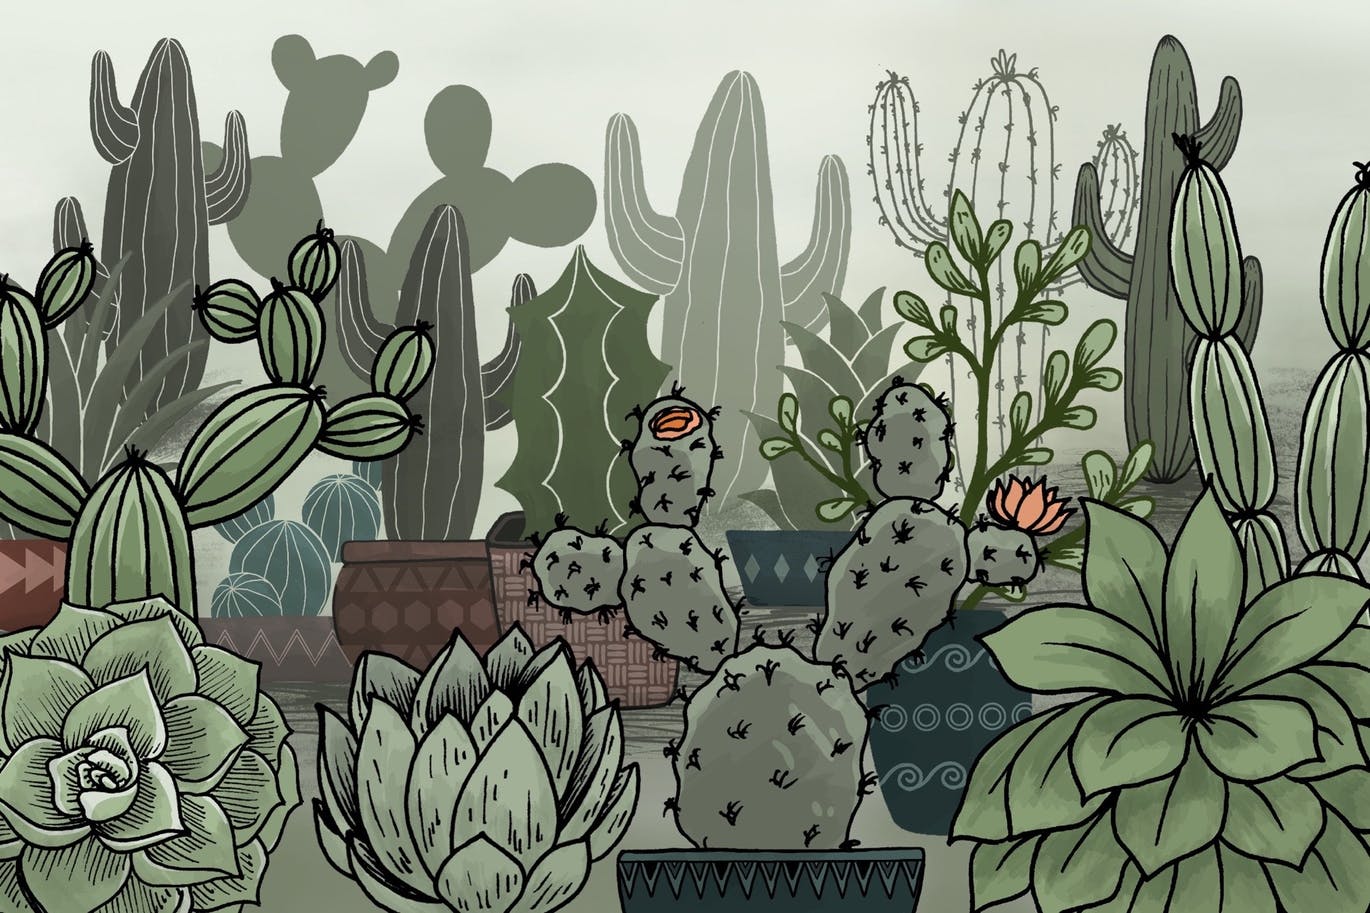 仙人掌多肉植物花盆元素Procreate笔刷素材 Cactus Succulents and Pots – Procreate Brushes 图片素材 第2张